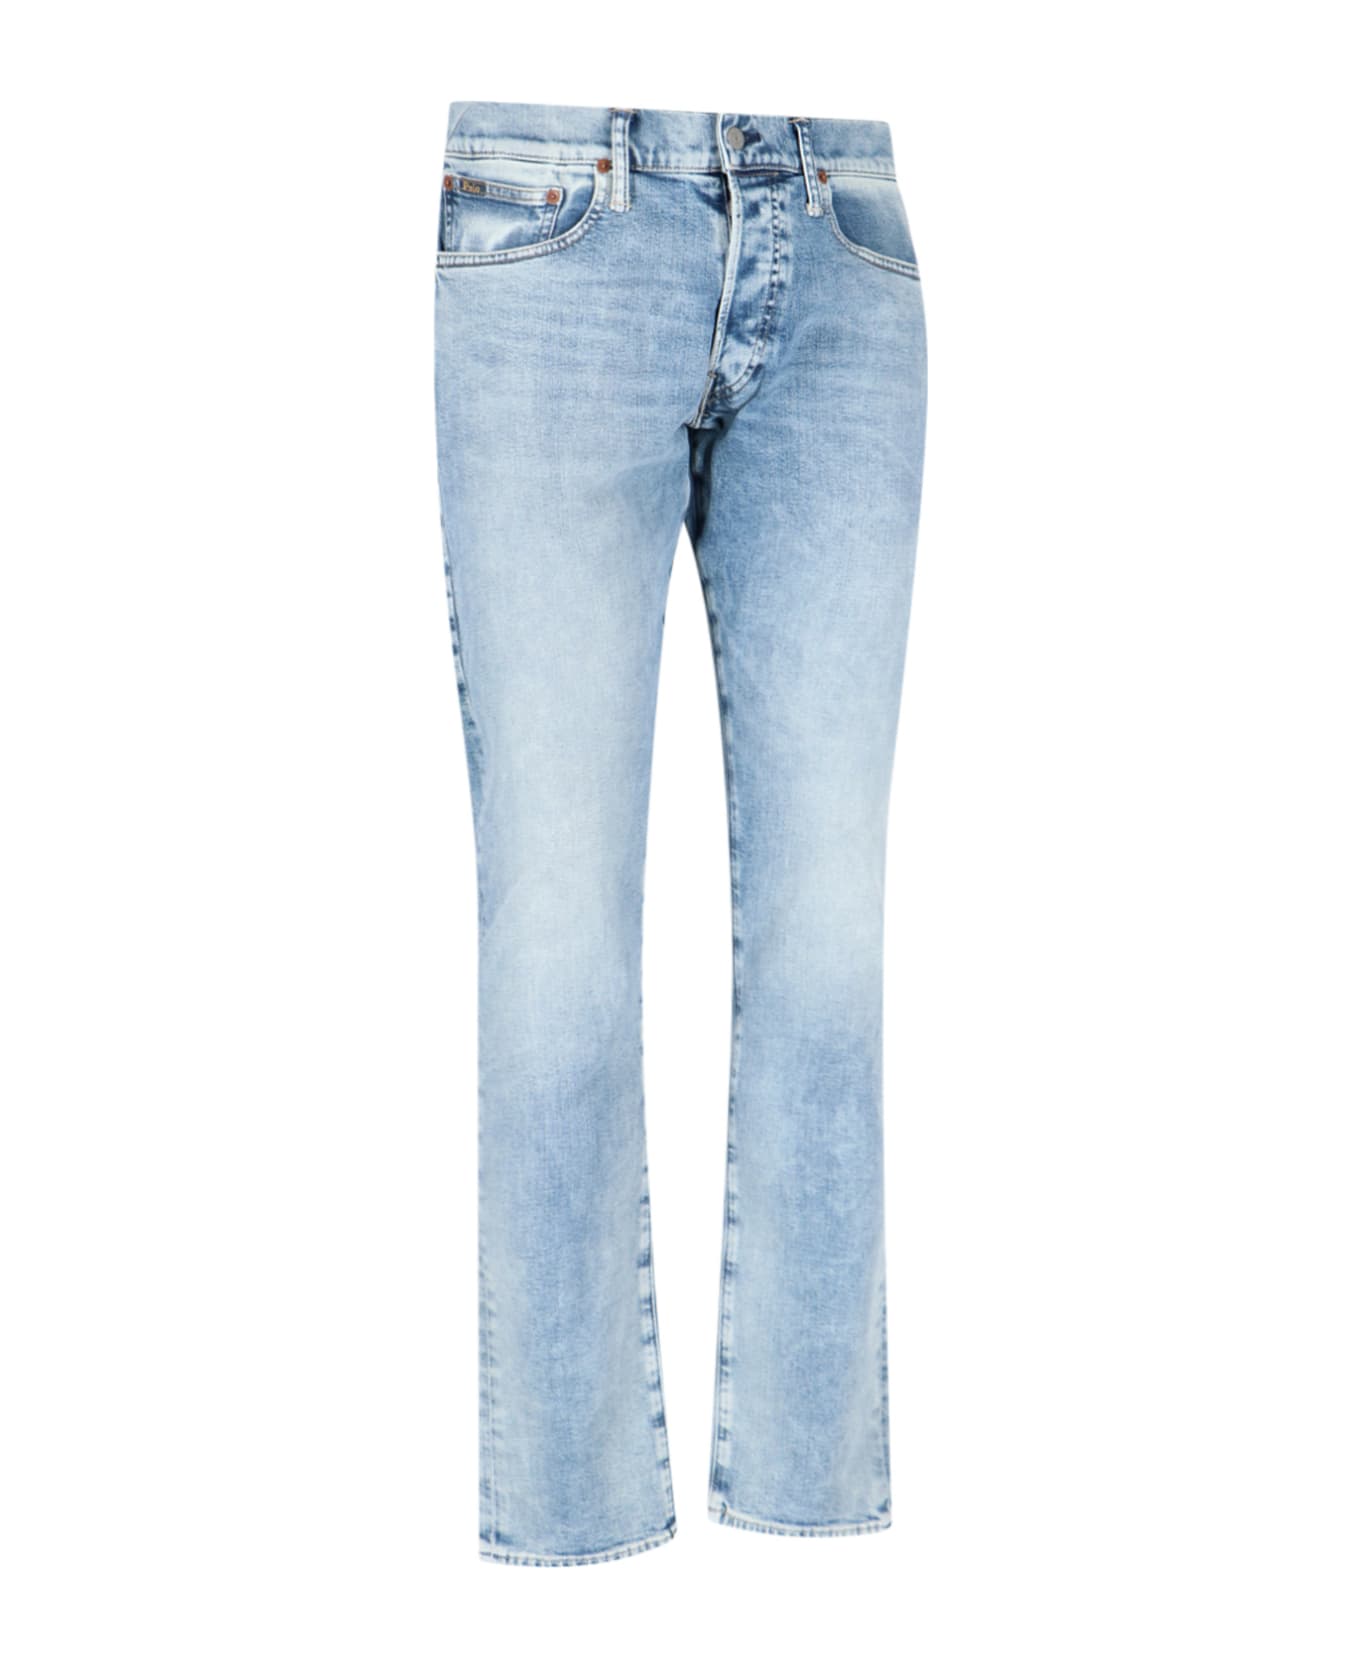 Polo Ralph Lauren Slim Fit Jeans - Light Blue